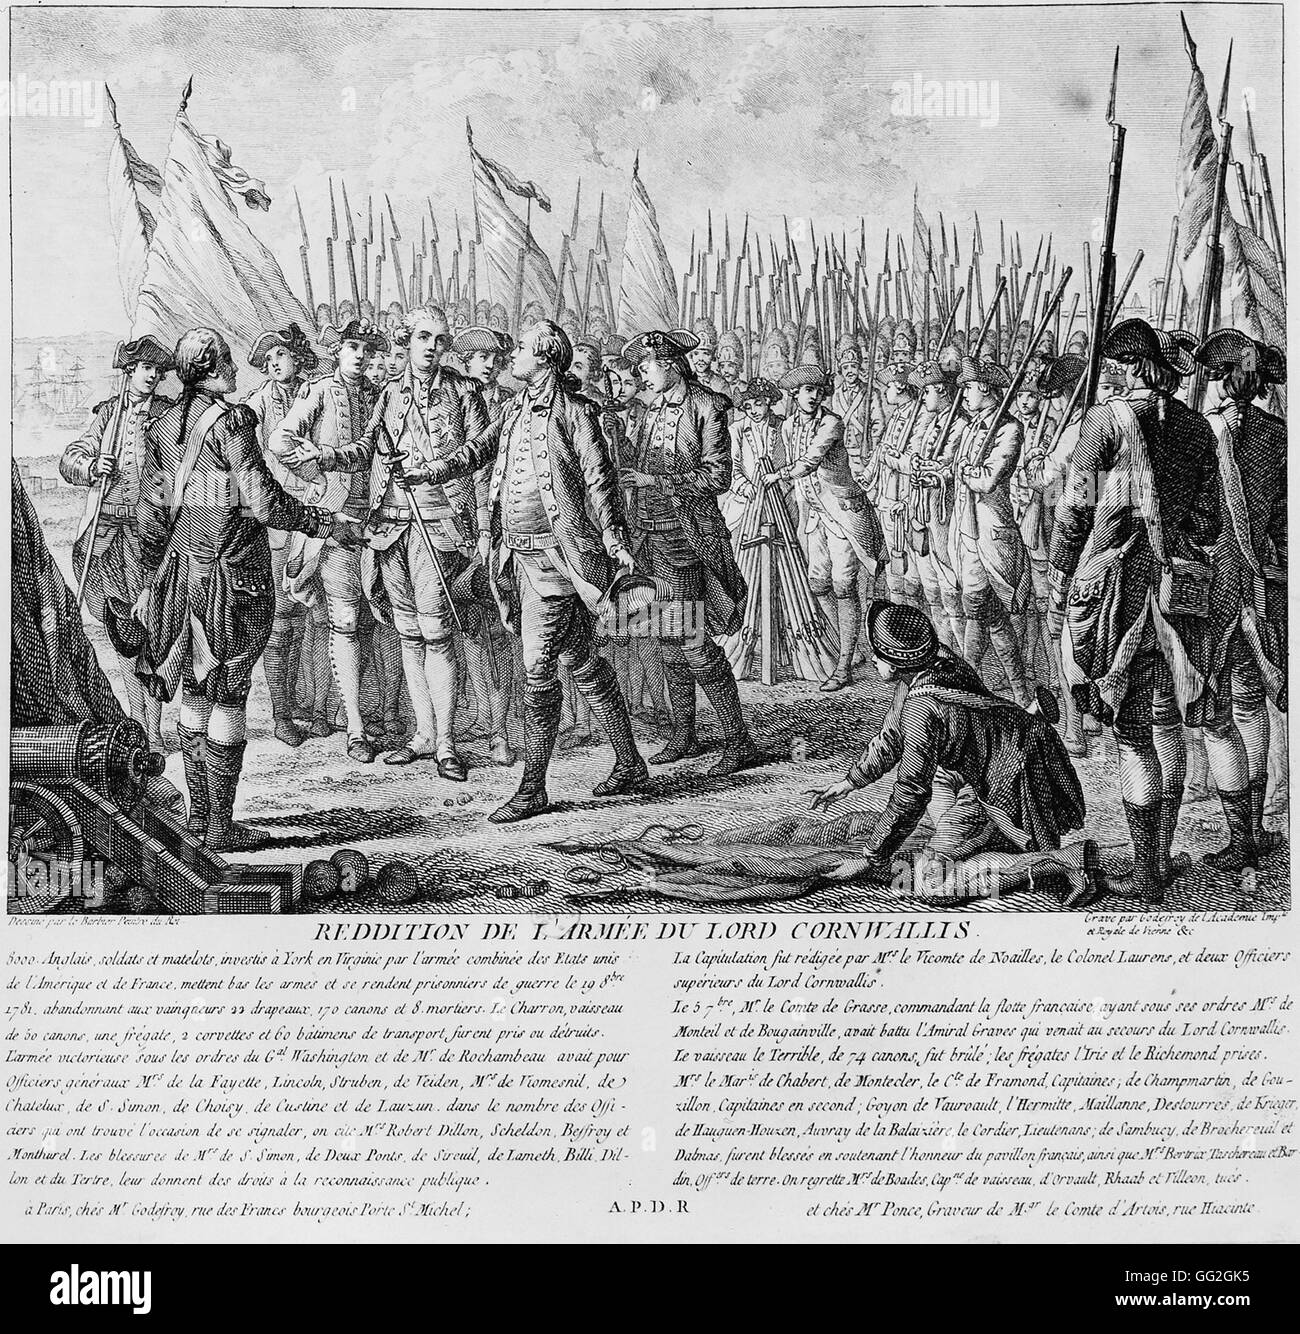 La rinuncia di Lord Cornwallis' esercito nella Battaglia di Yorktown, 1781 Parigi e alla Bibliothèque Nationale de France Foto Stock